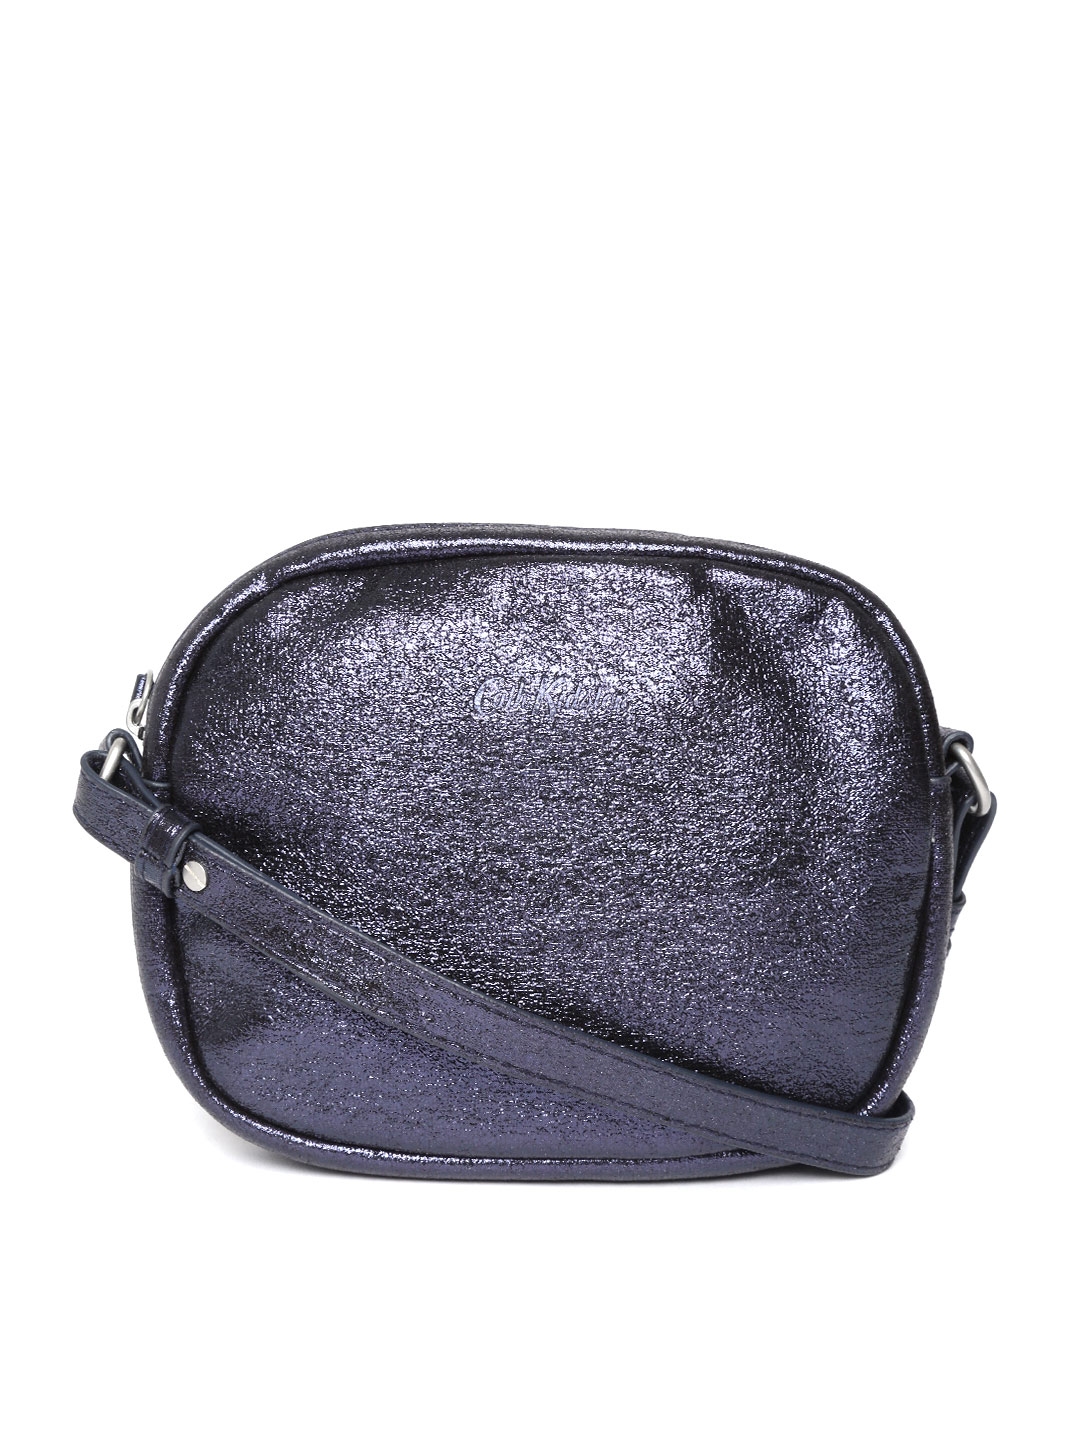 Buy Cath Kidston Navy Blue Shimmer Sling Bag - Handbags ...